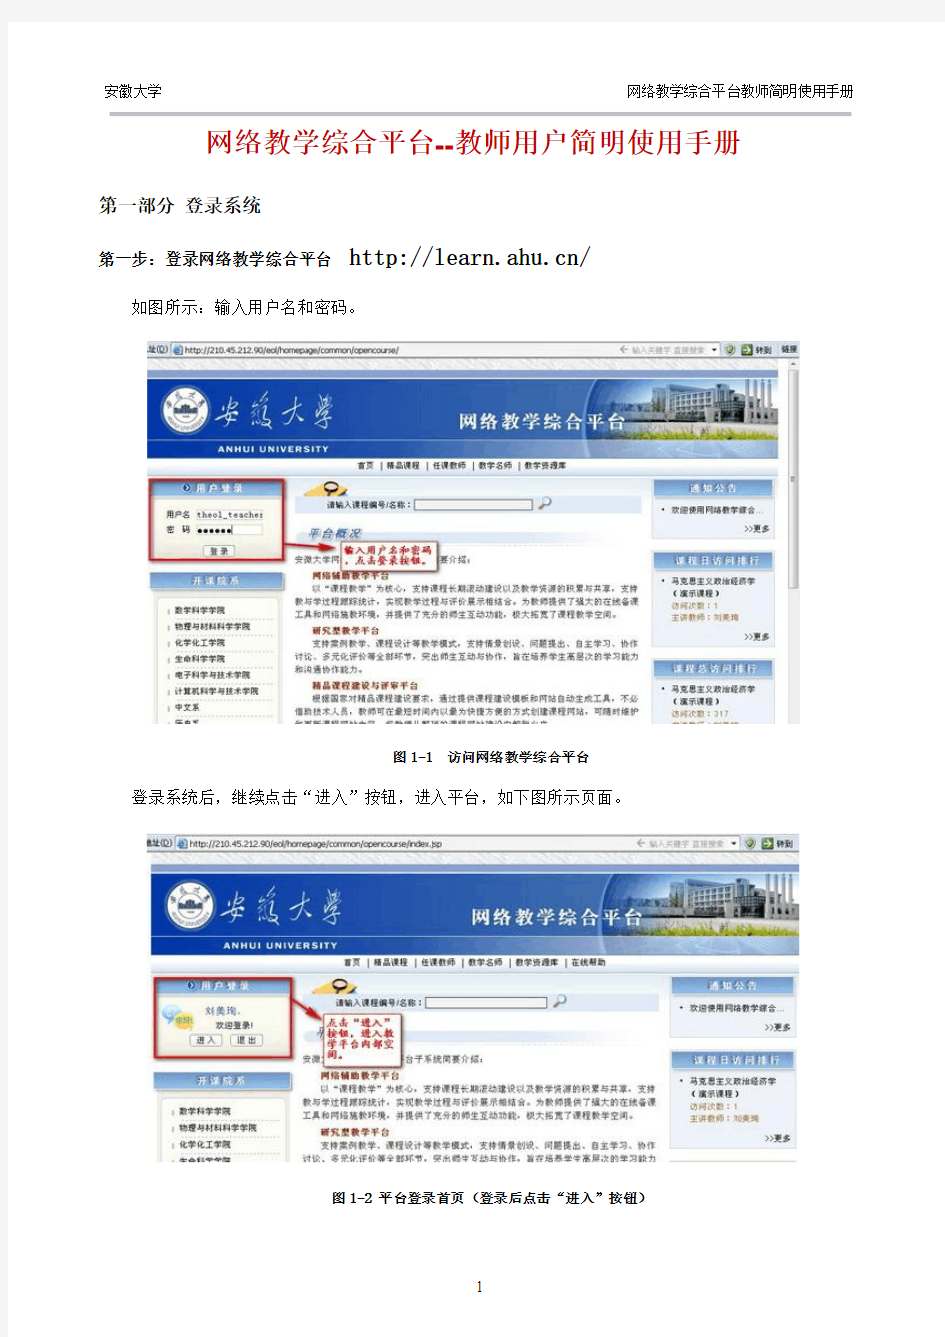 网络教学综合平台教师简明使用手册(全)